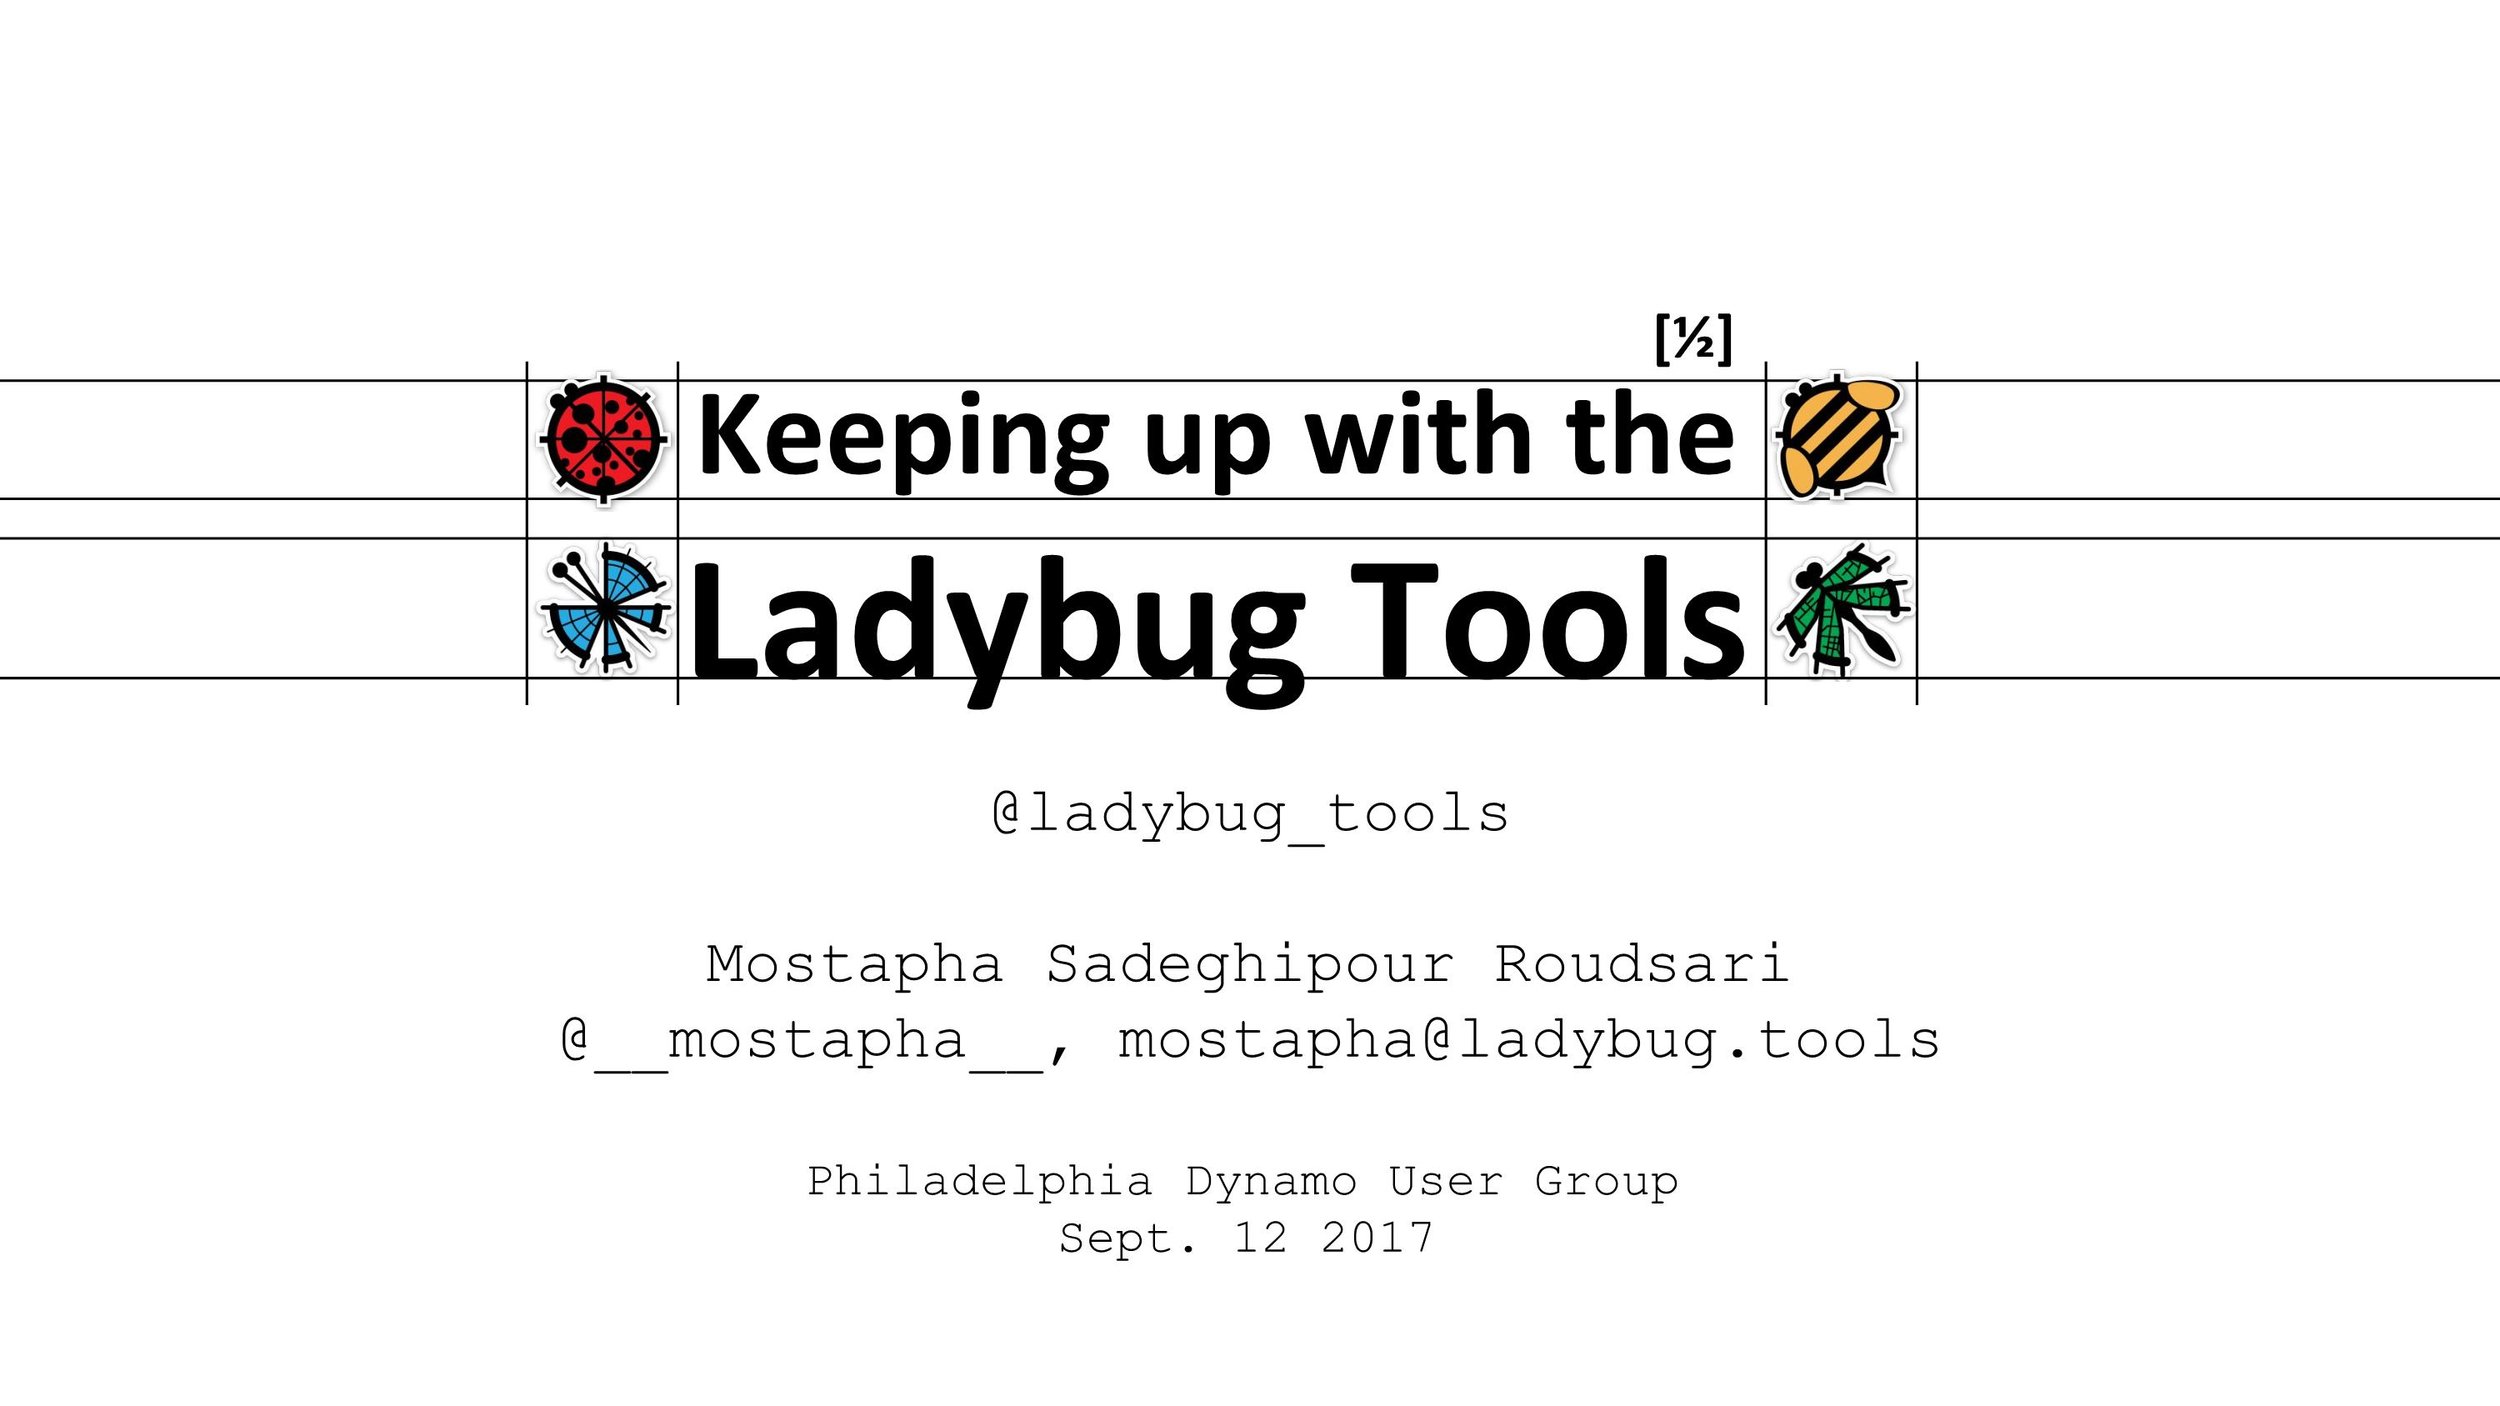 Ladybug Tools